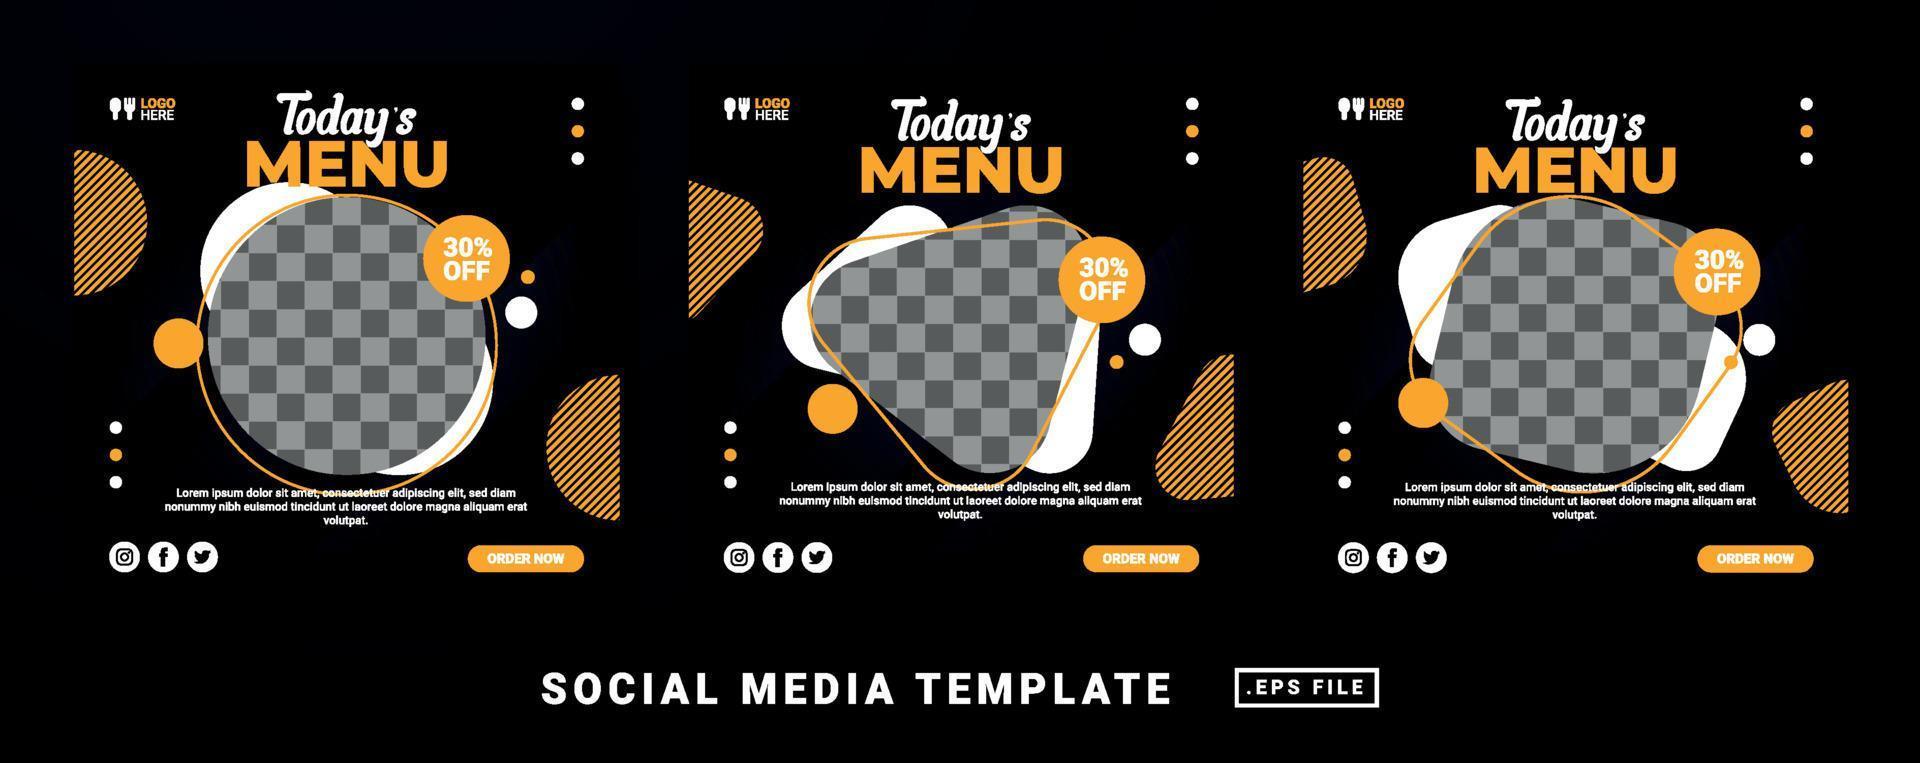 folleto o plantilla de menú de comida de restaurante temático de publicación en redes sociales vector